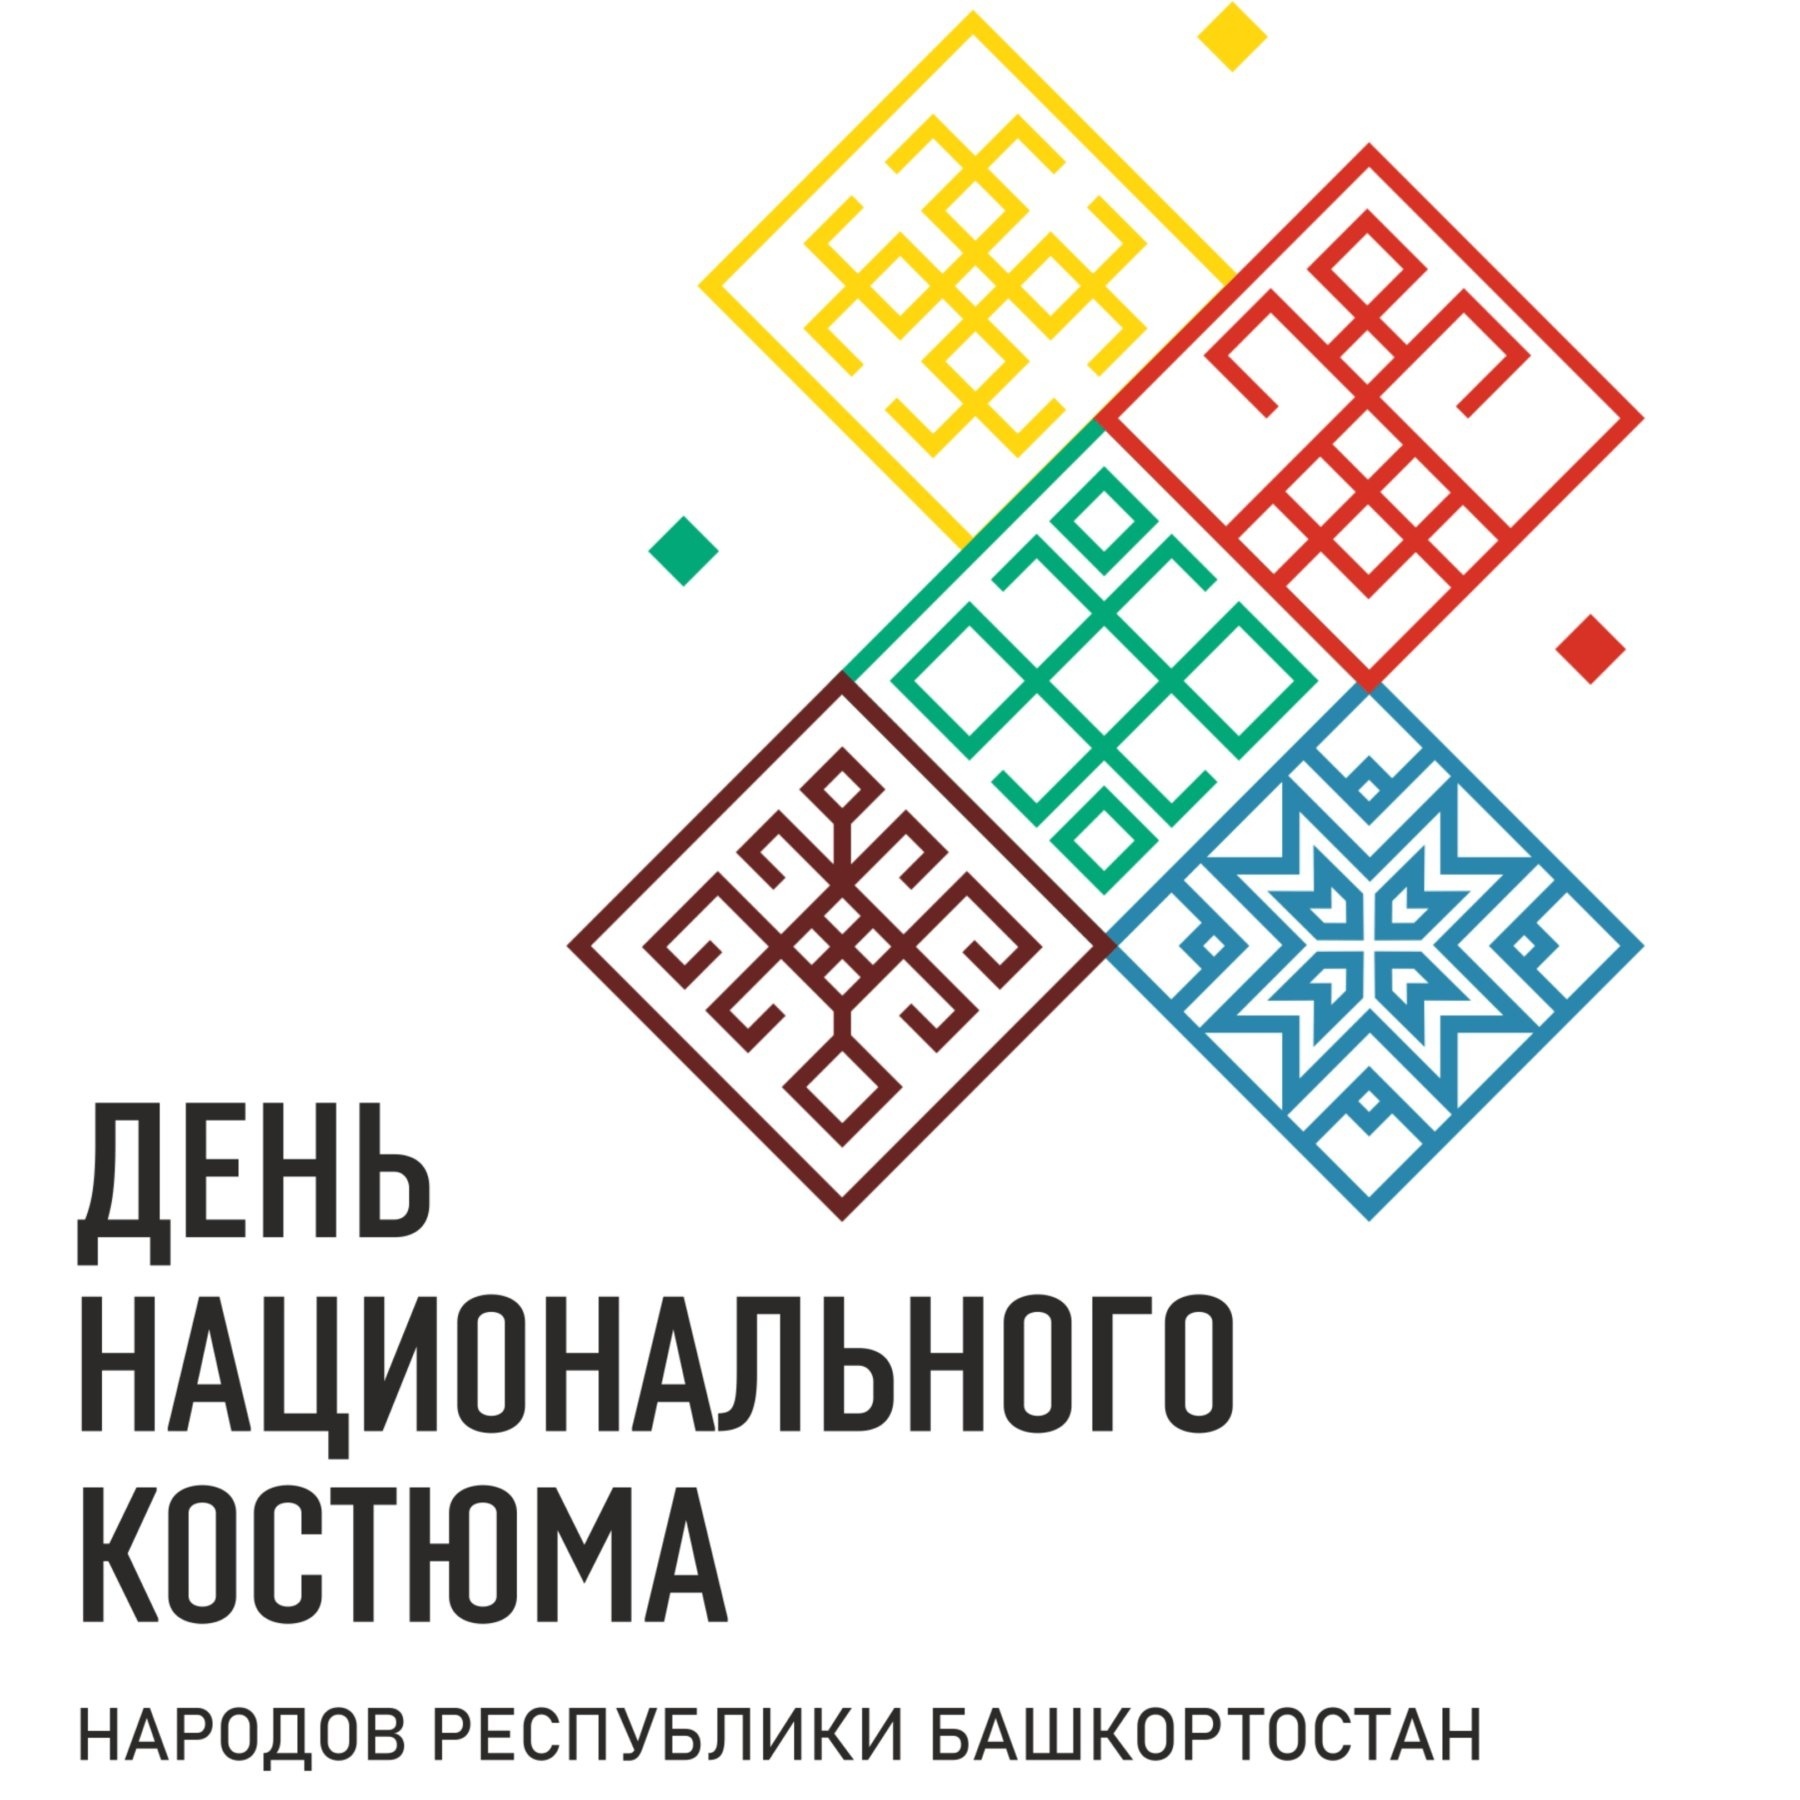 17 апреля в Молодёжном центре "Вираж" прошло познавательное мероприятие "Национальные костюмы народов Республики Башкортостан"